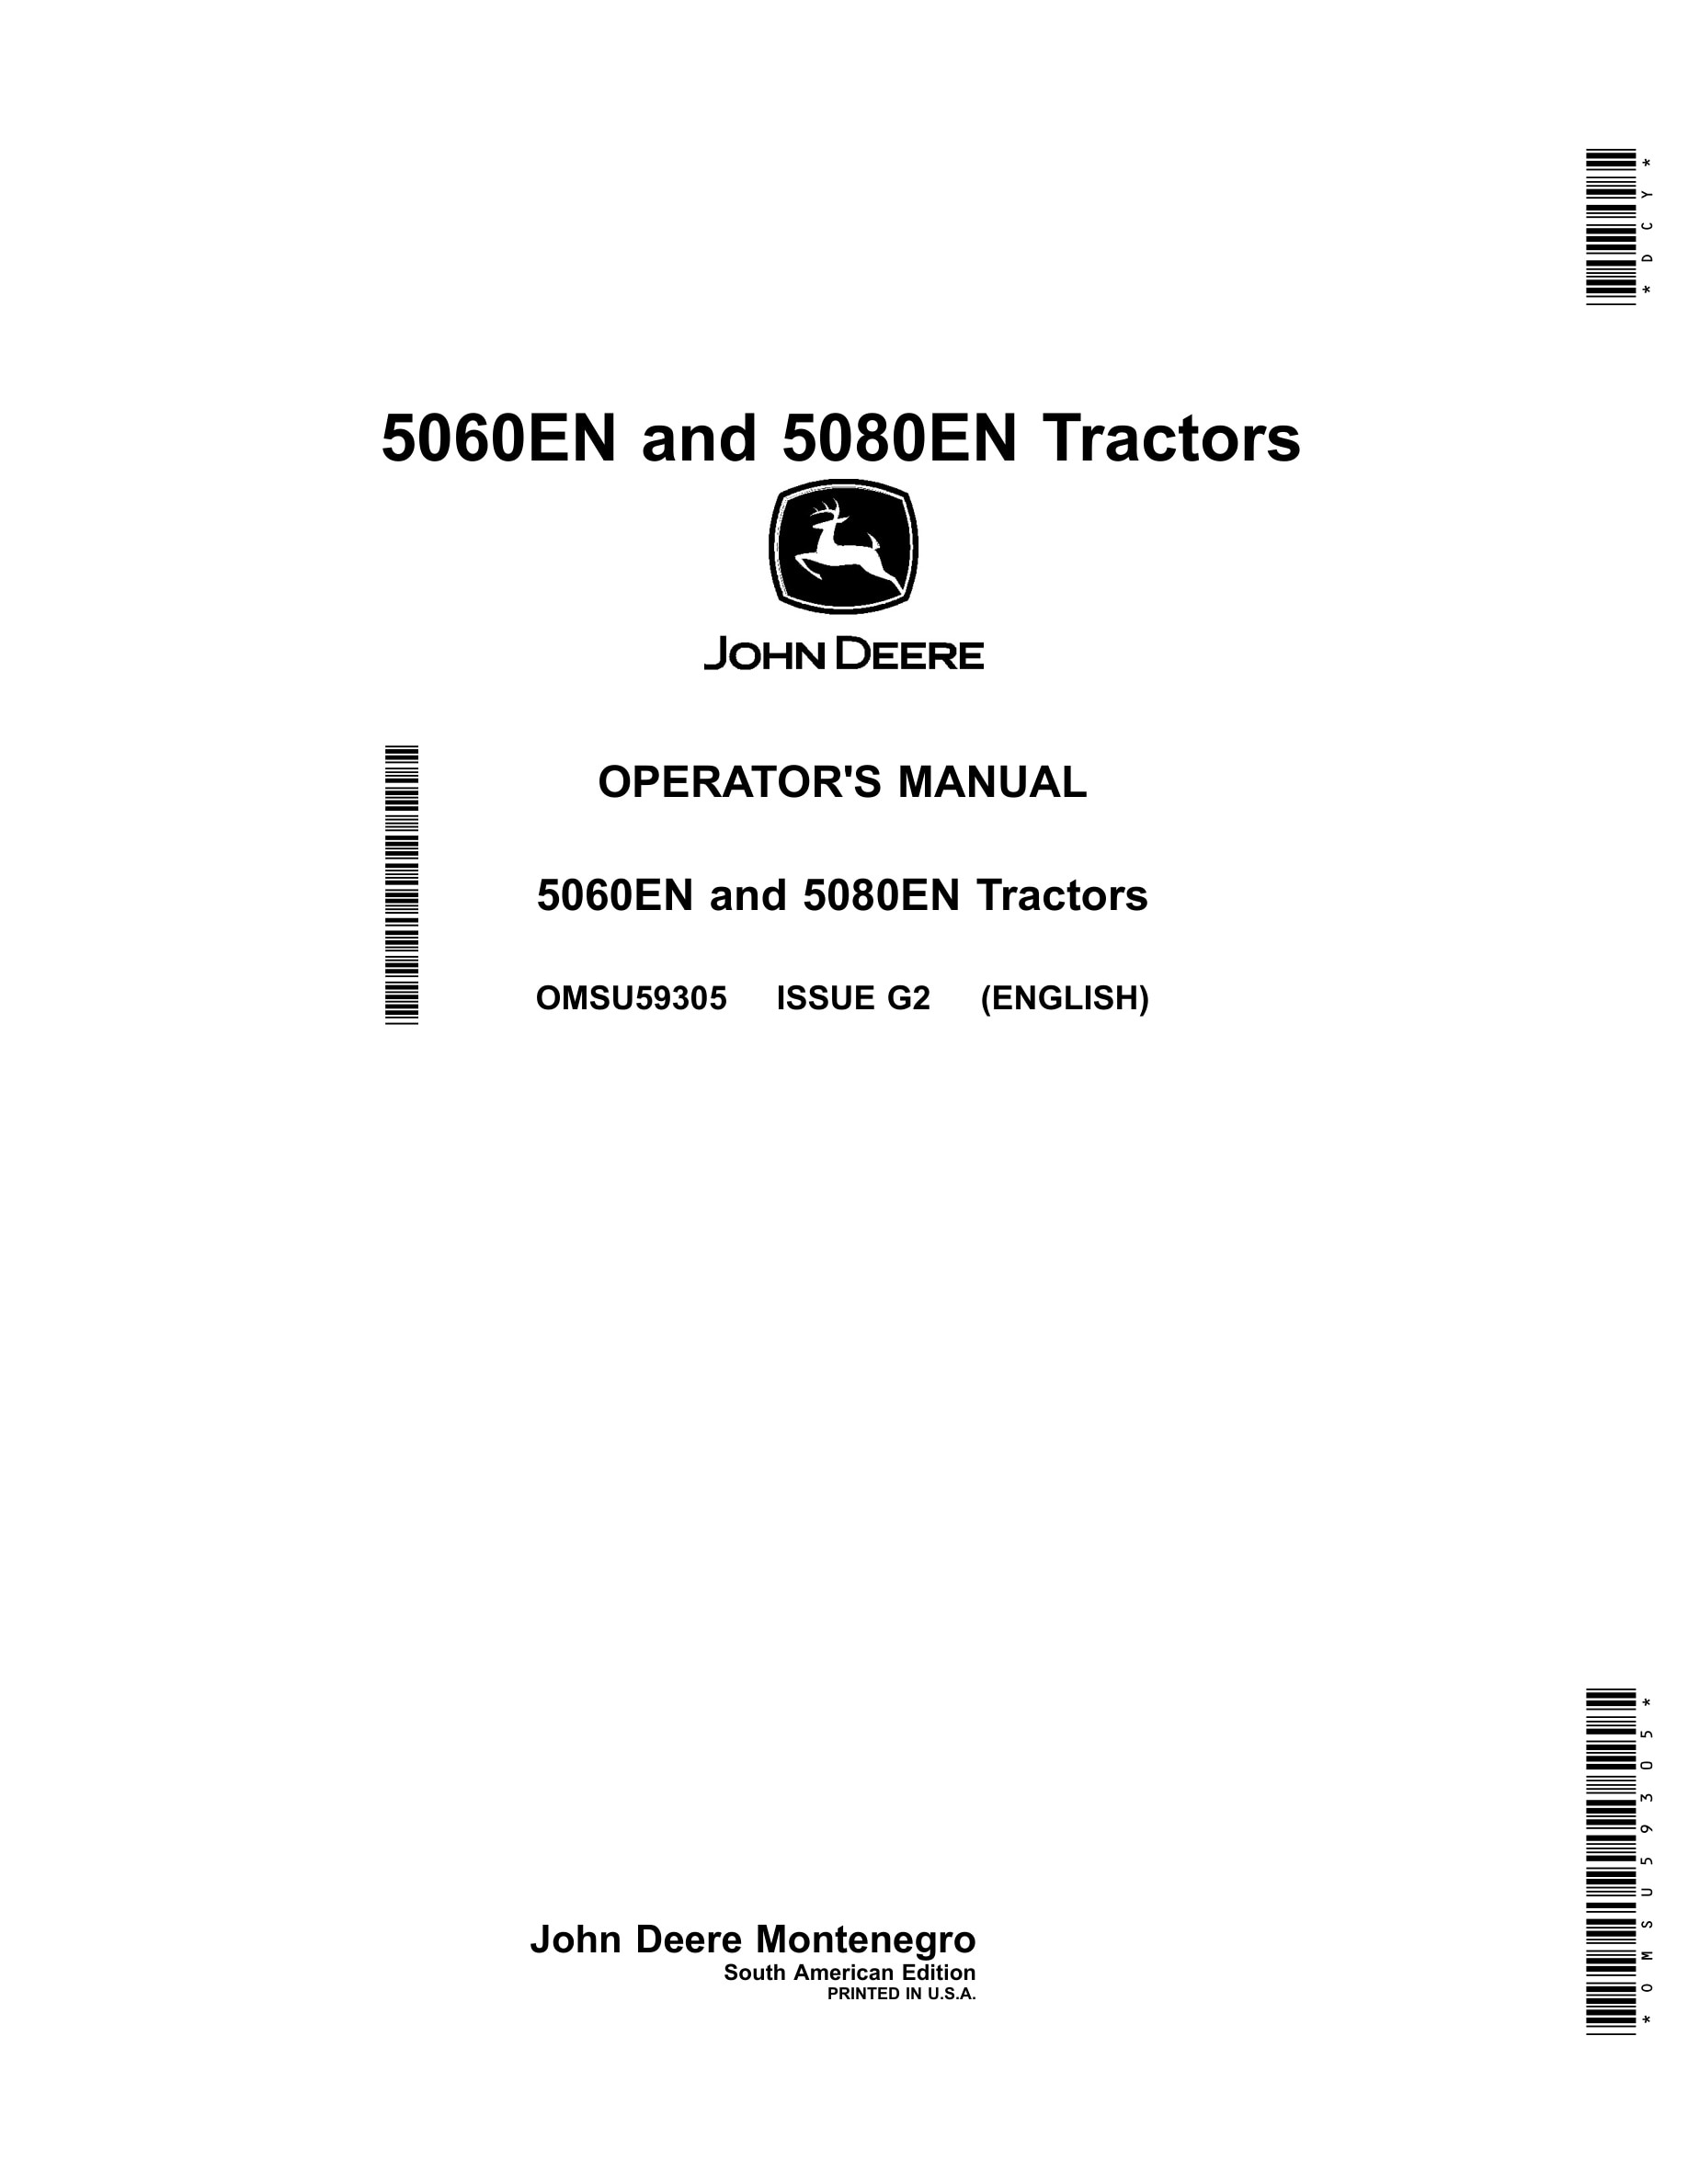 John Deere 5060en And 5080en Tractors Operator Manuals OMSU59305-1